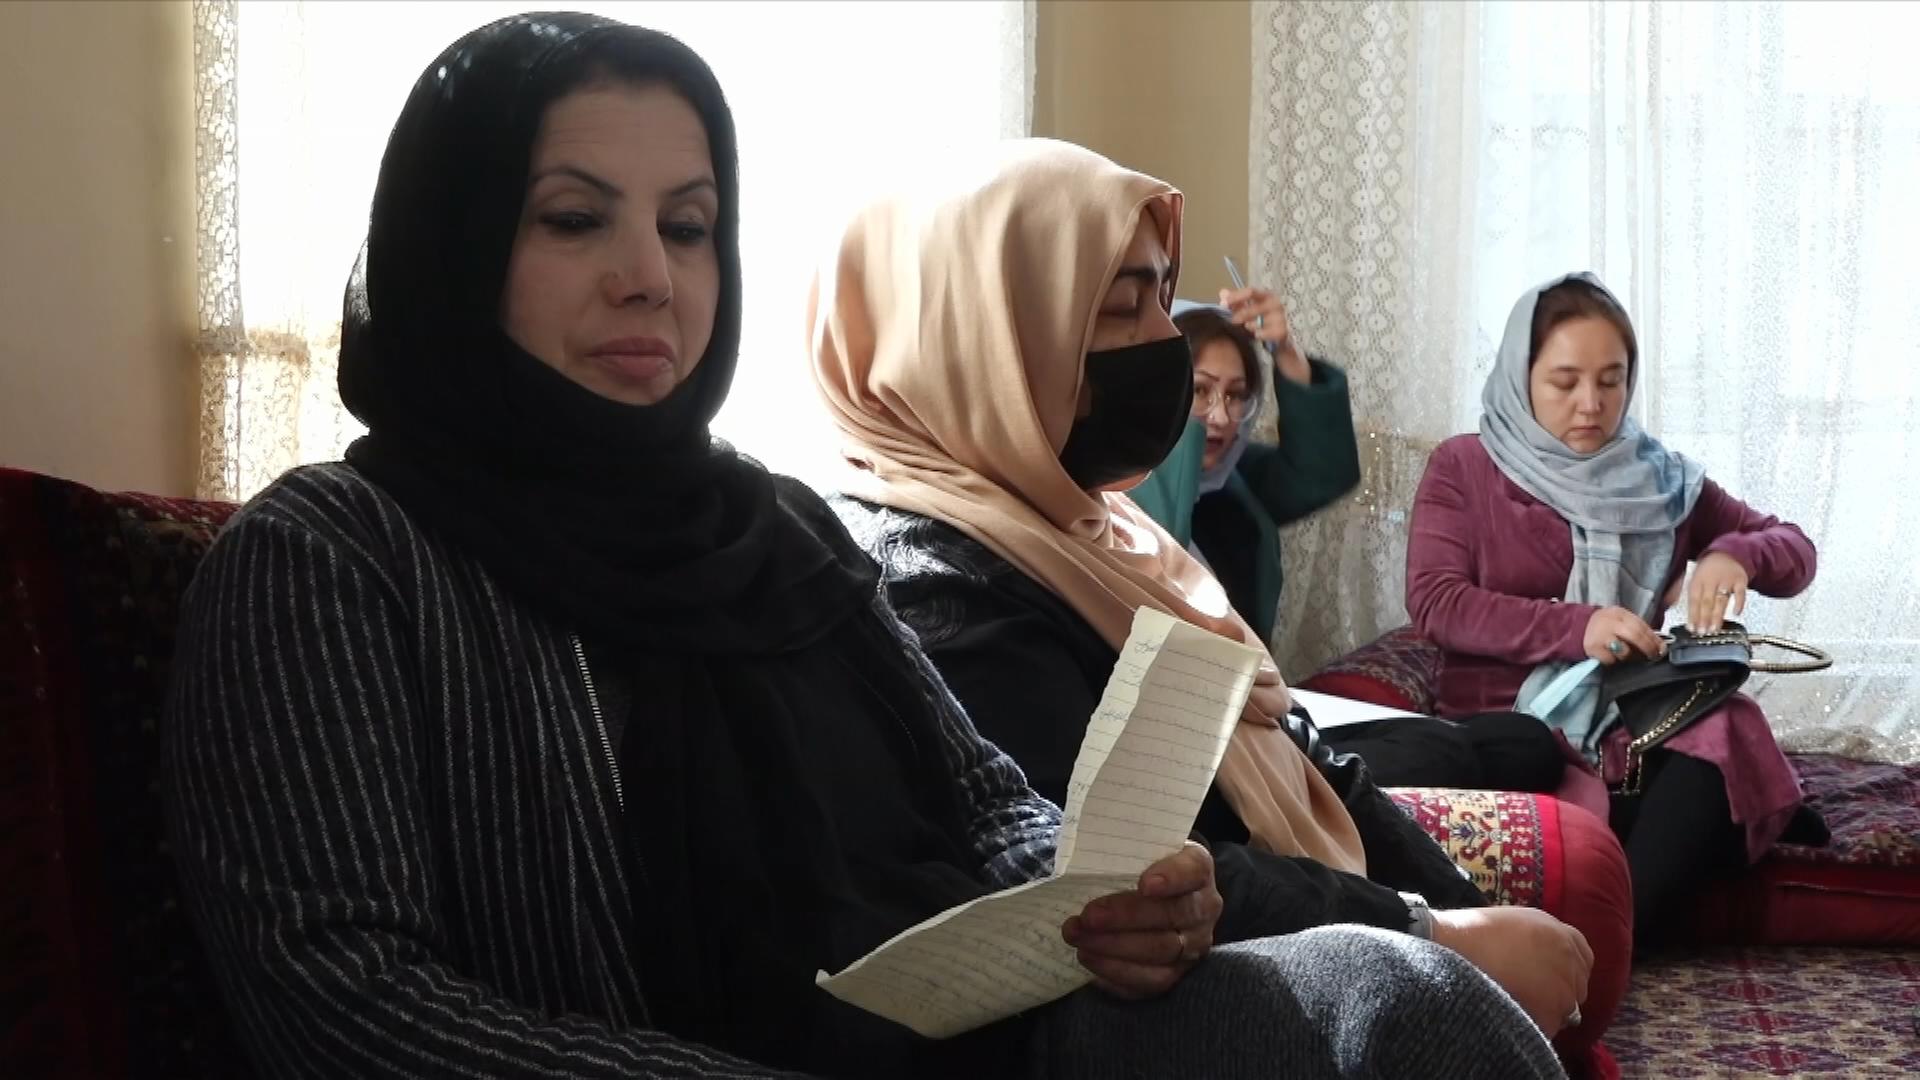 Frauen in Afghanistan in einem Raum sitzend